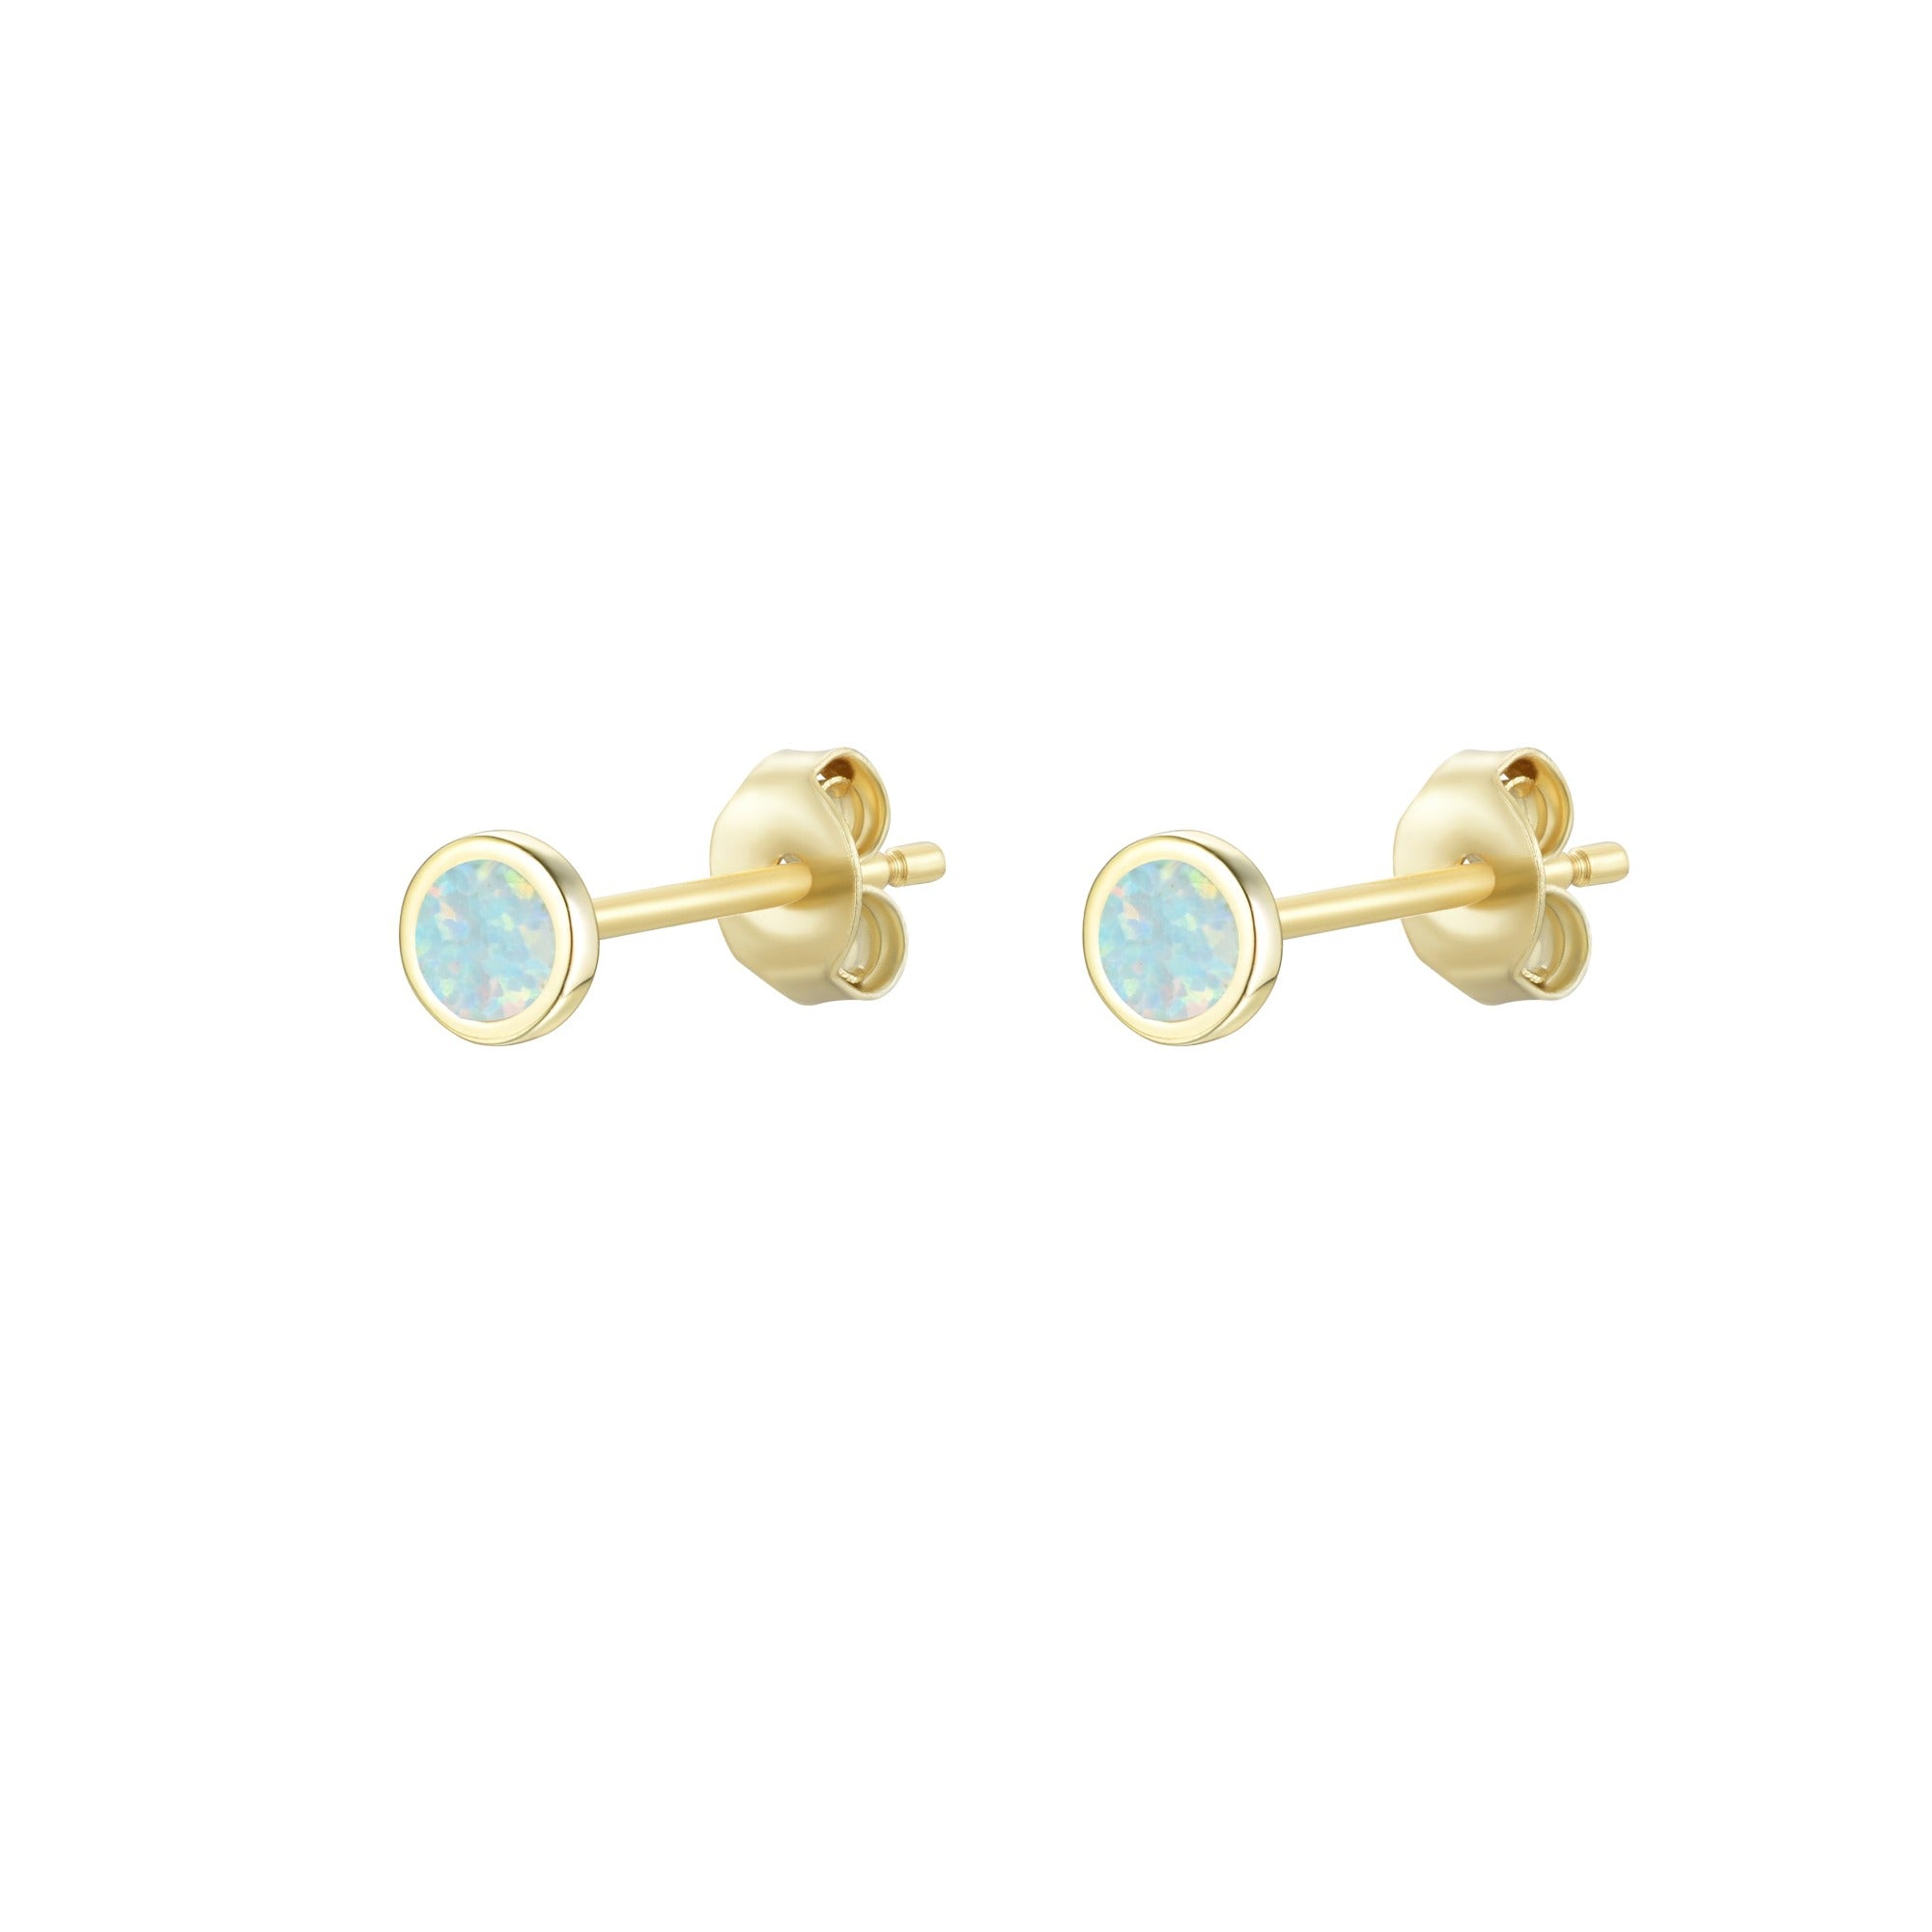 Mini opal stud earrings in light green gold